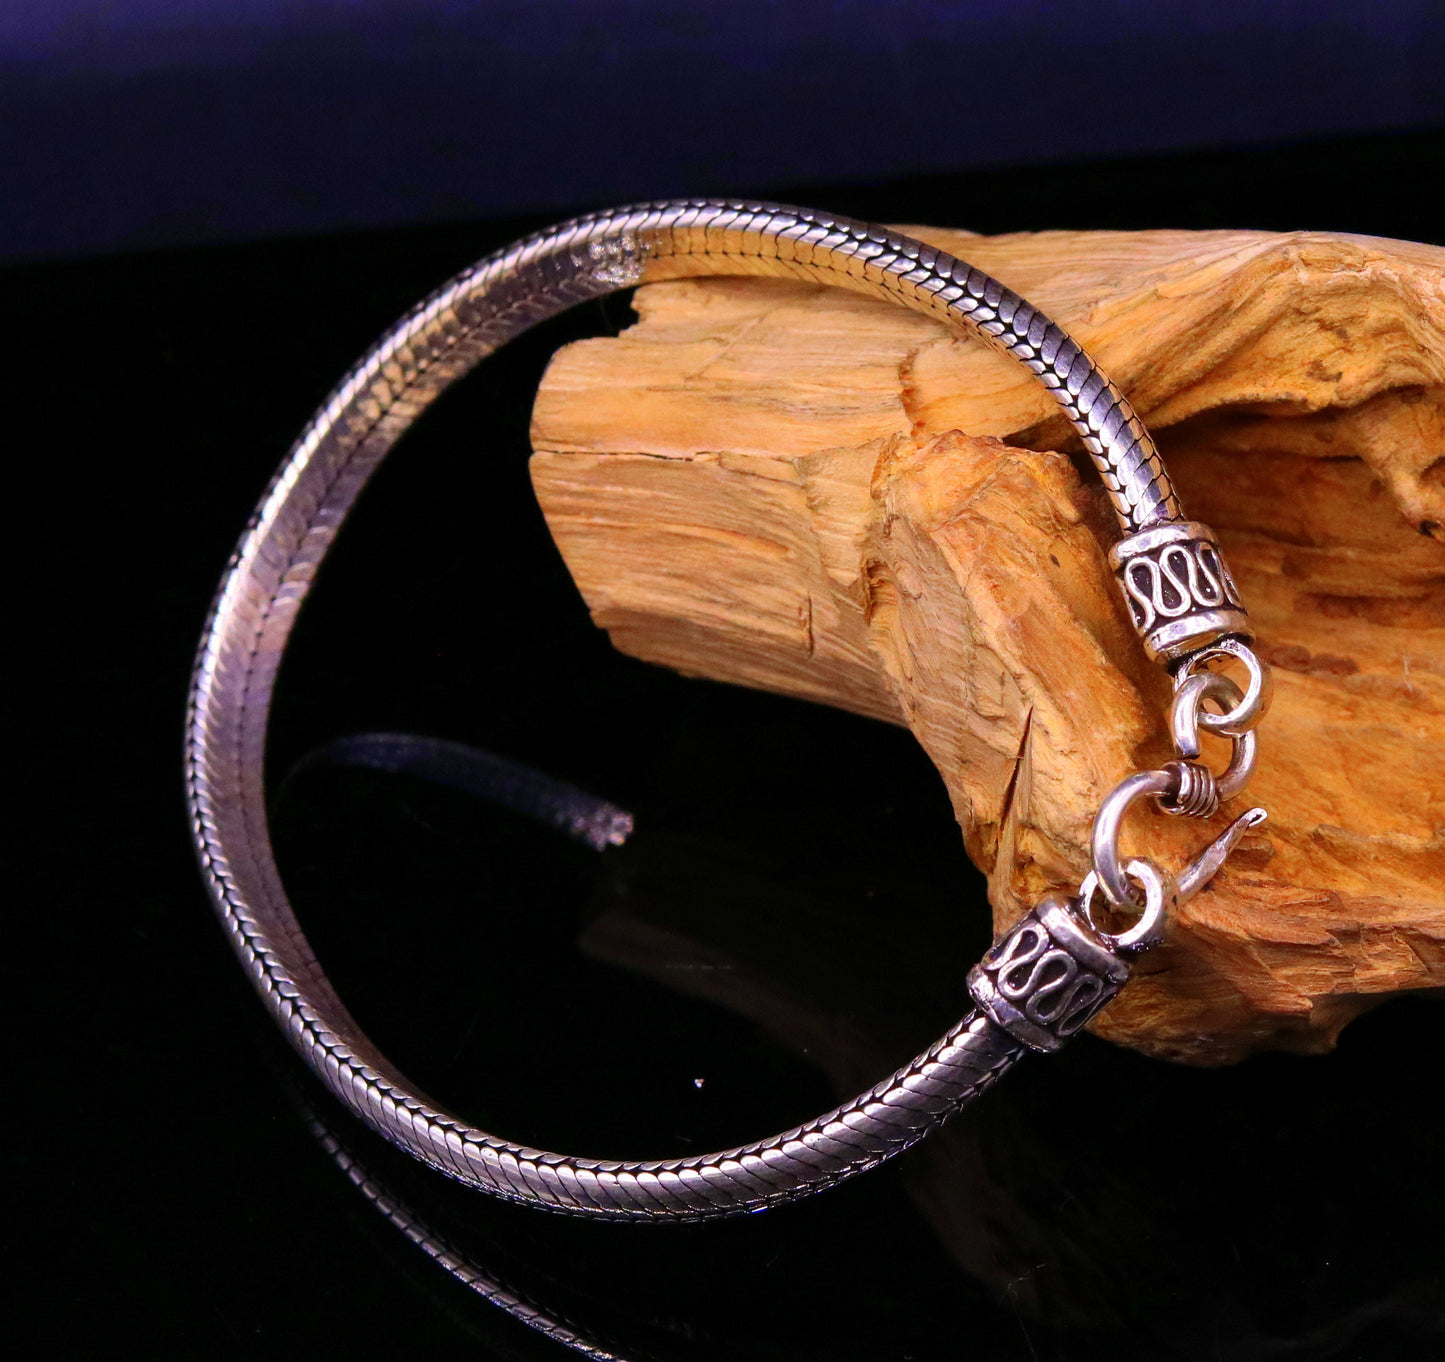 8" inches 9mm 25 sterling silver handmade snake chain bracelet D shape Customized bracelet half round snake chain bracelet unisex sbr148 - TRIBAL ORNAMENTS